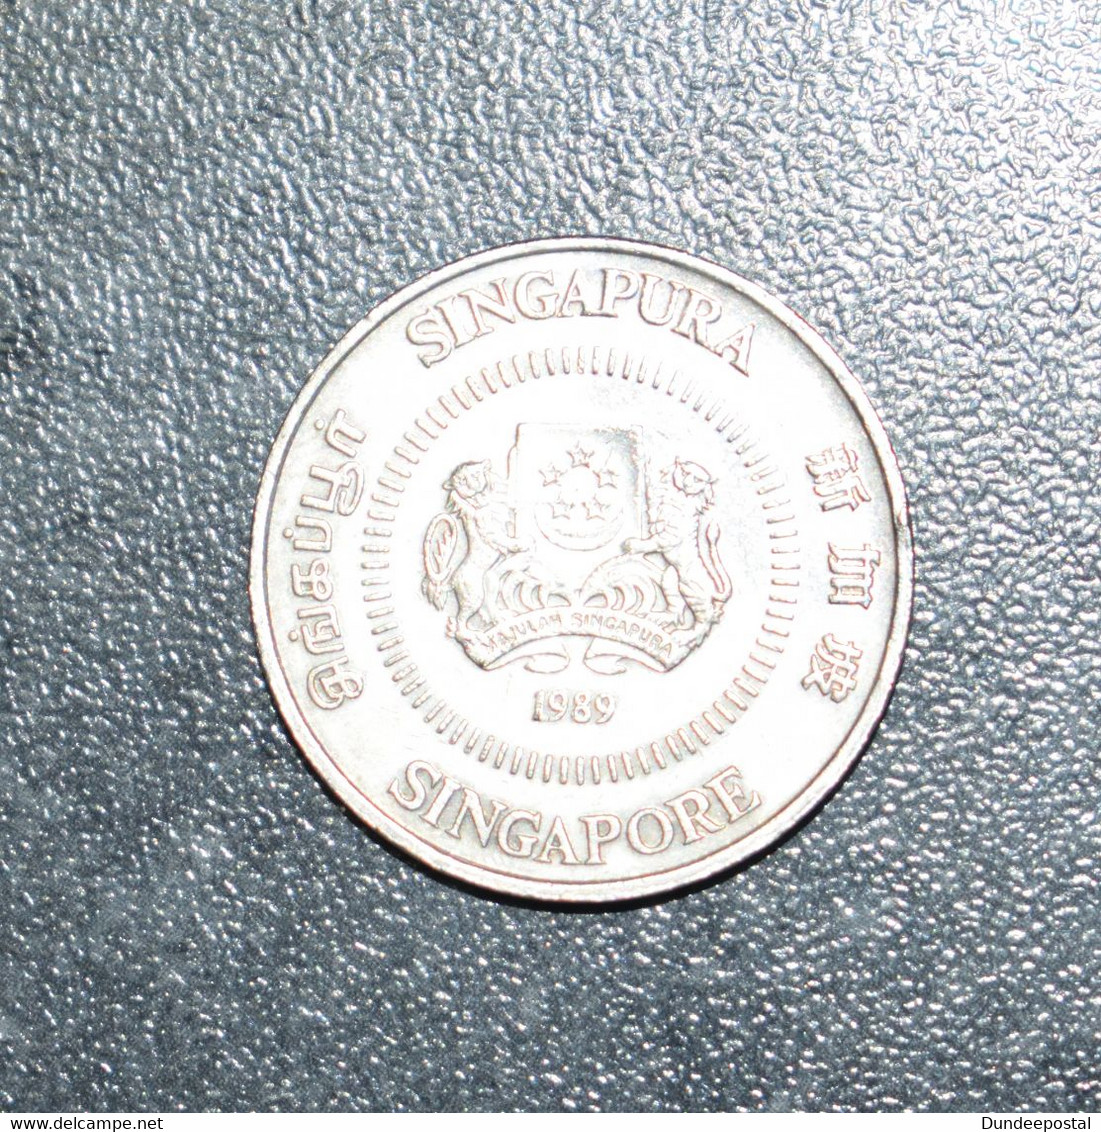 Singapore Coins  50c   1989  Clean   (pdk)   ~~L@@K~~ - Singapour